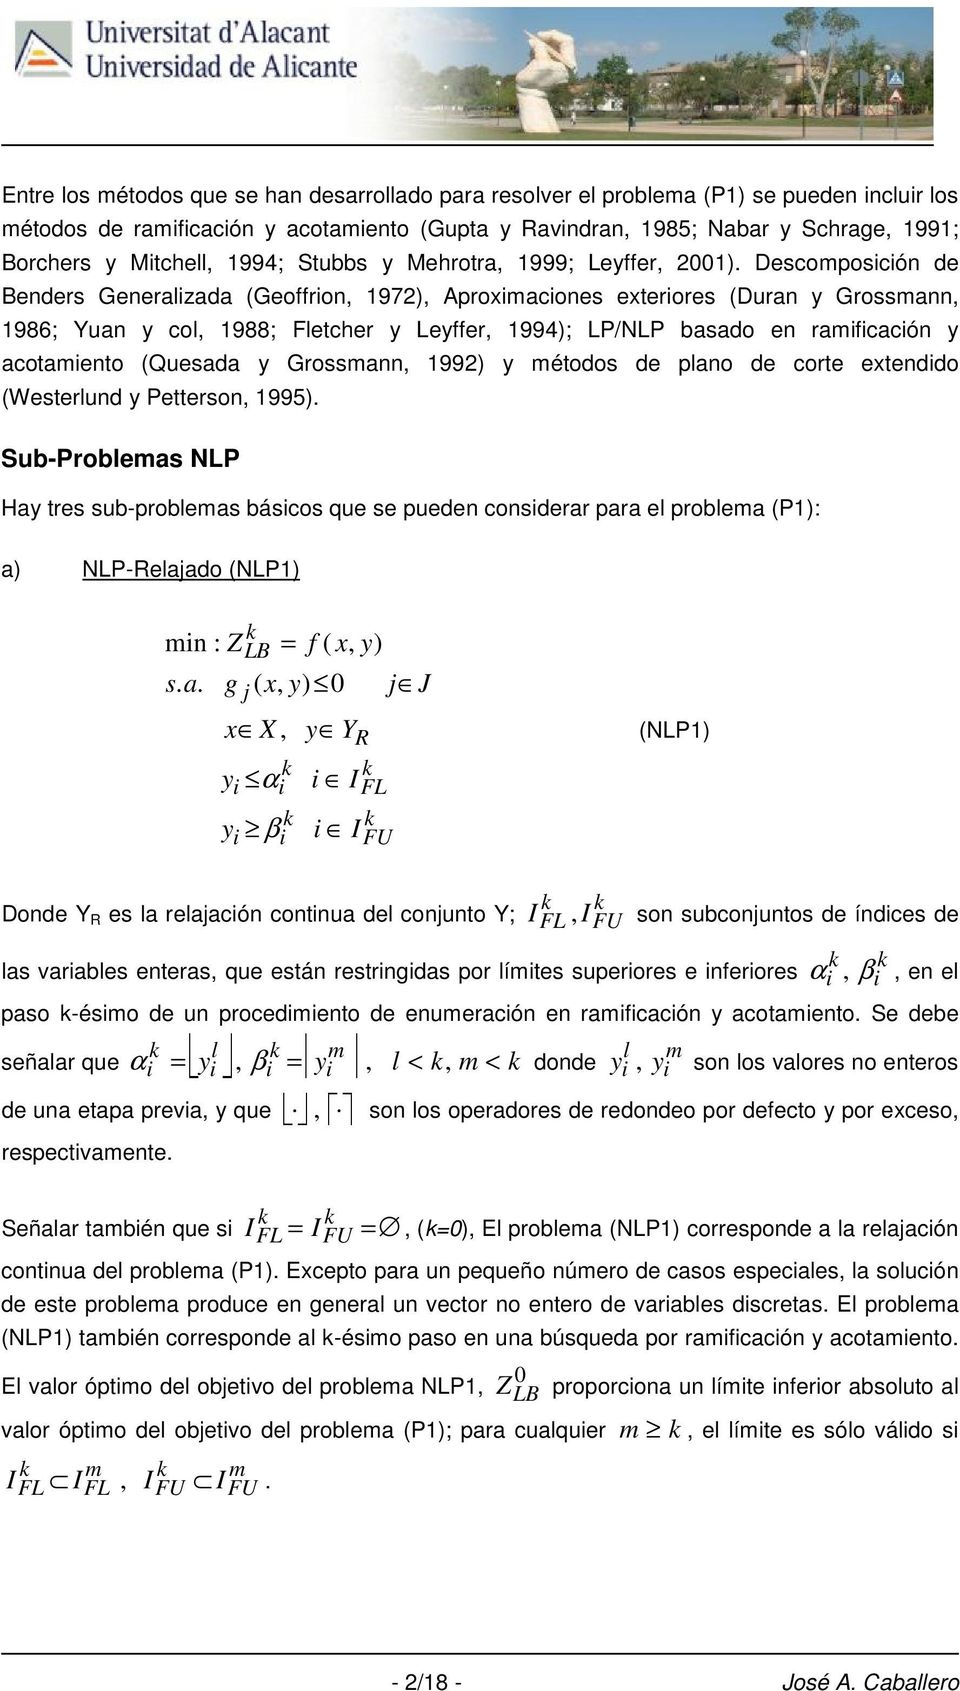 Quesada Grossmann 1992 métodos de plano de corte etendido Westerlund Petterson 1995 Sub-Problemas NLP Ha tres sub-problemas básicos que se pueden considerar para el problema P1: a NLP-Relaado NLP1